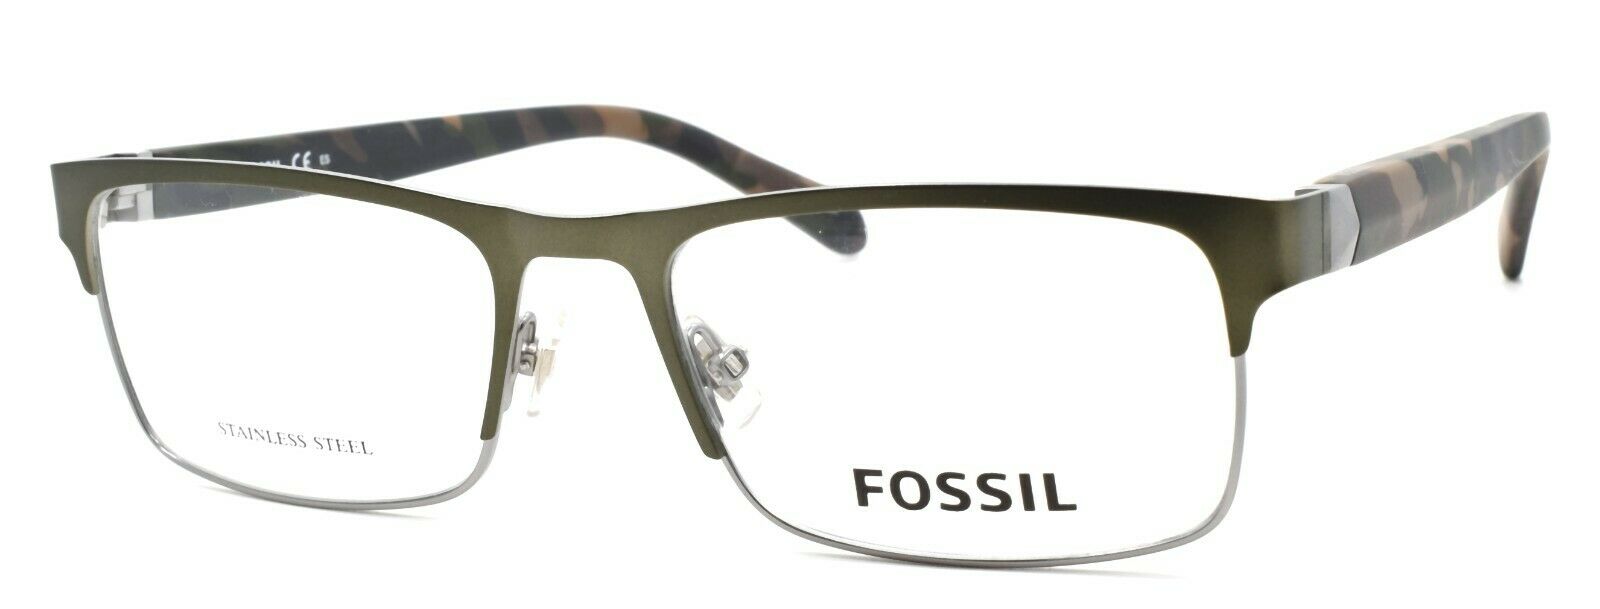 1-Fossil FOS 7036 4C3 Men's Eyeglasses Frames 55-18-145 Olive-716736081021-IKSpecs